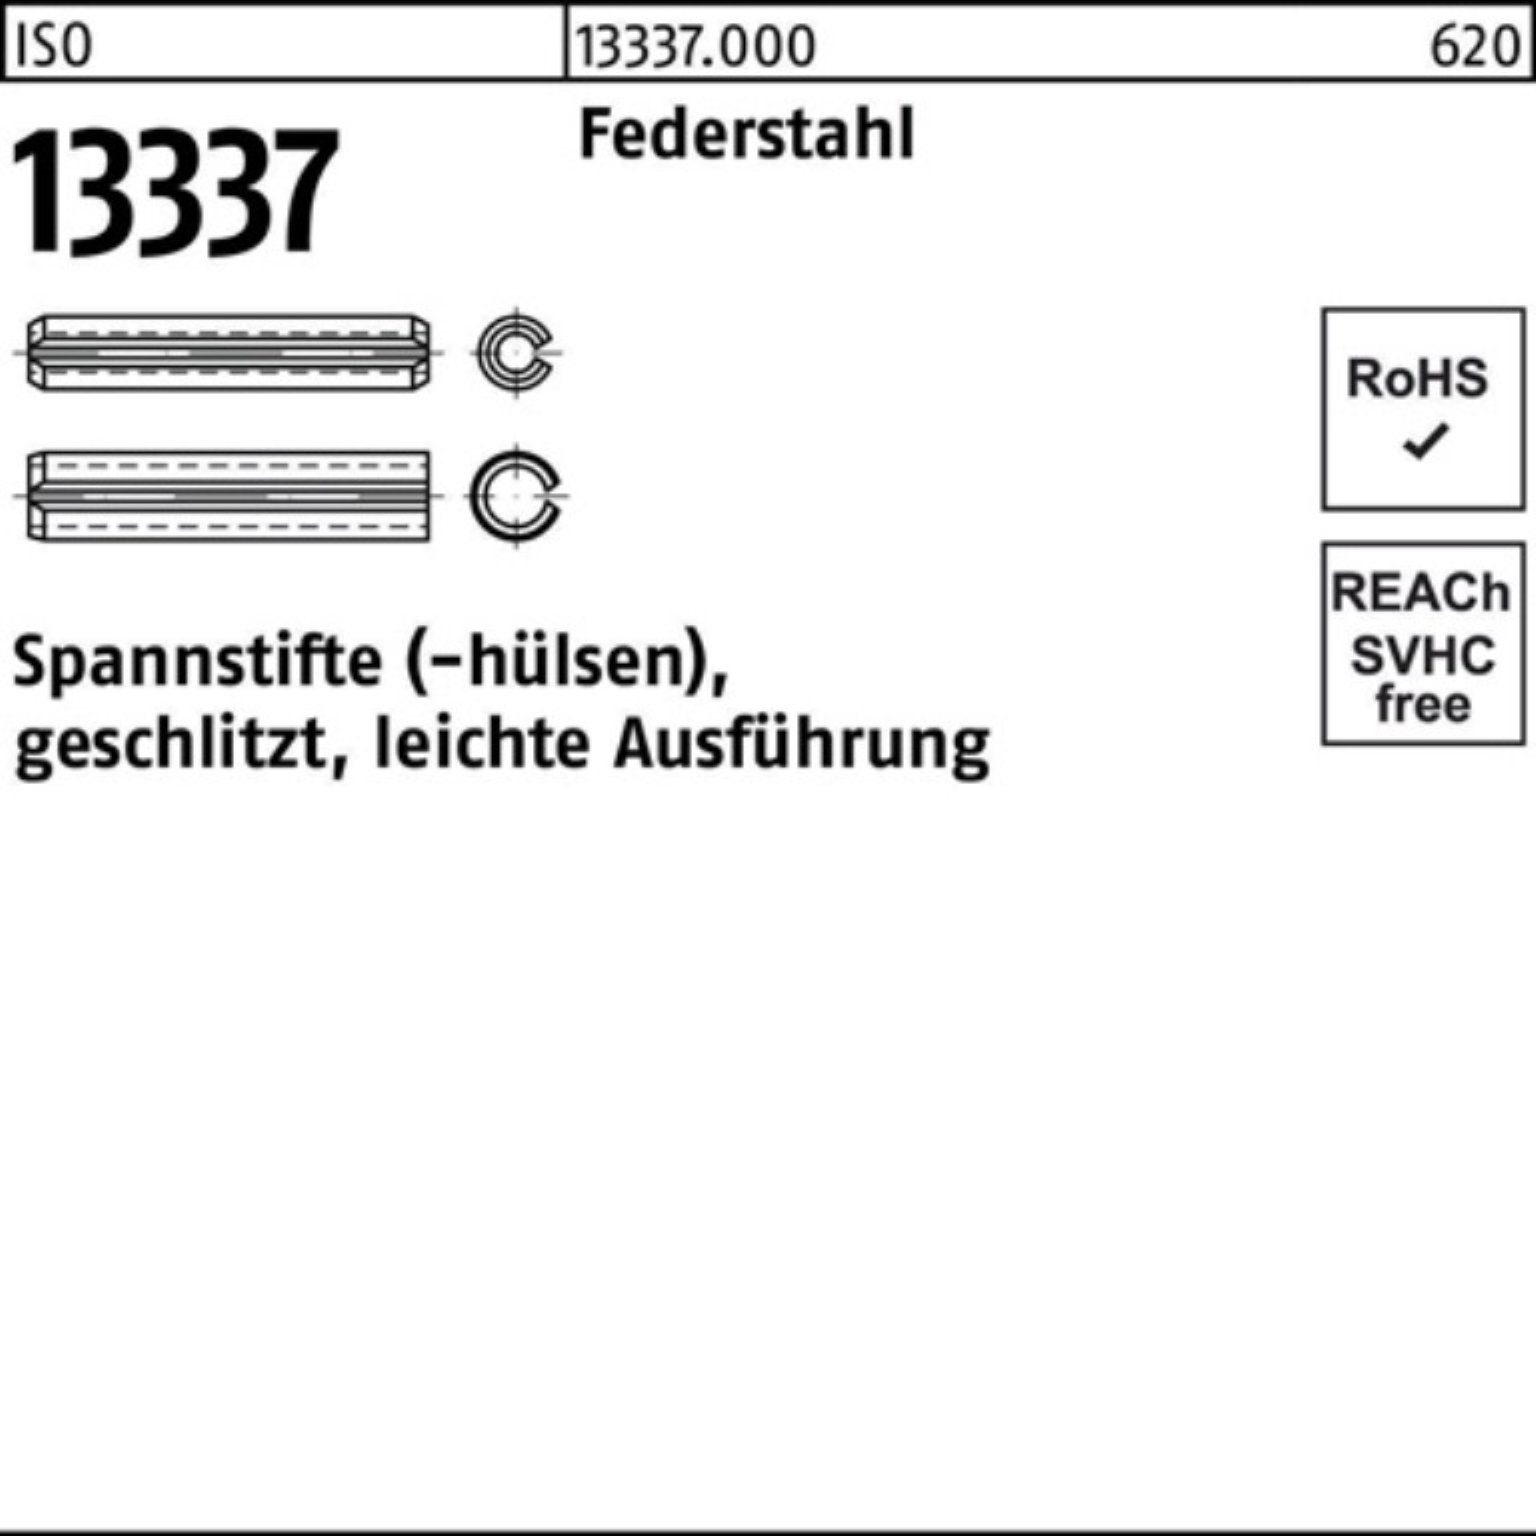 ISO Spannstifthülse Reyher 100er 10x geschlitzt Federstahl 30 lei Spannstift Pack 13337